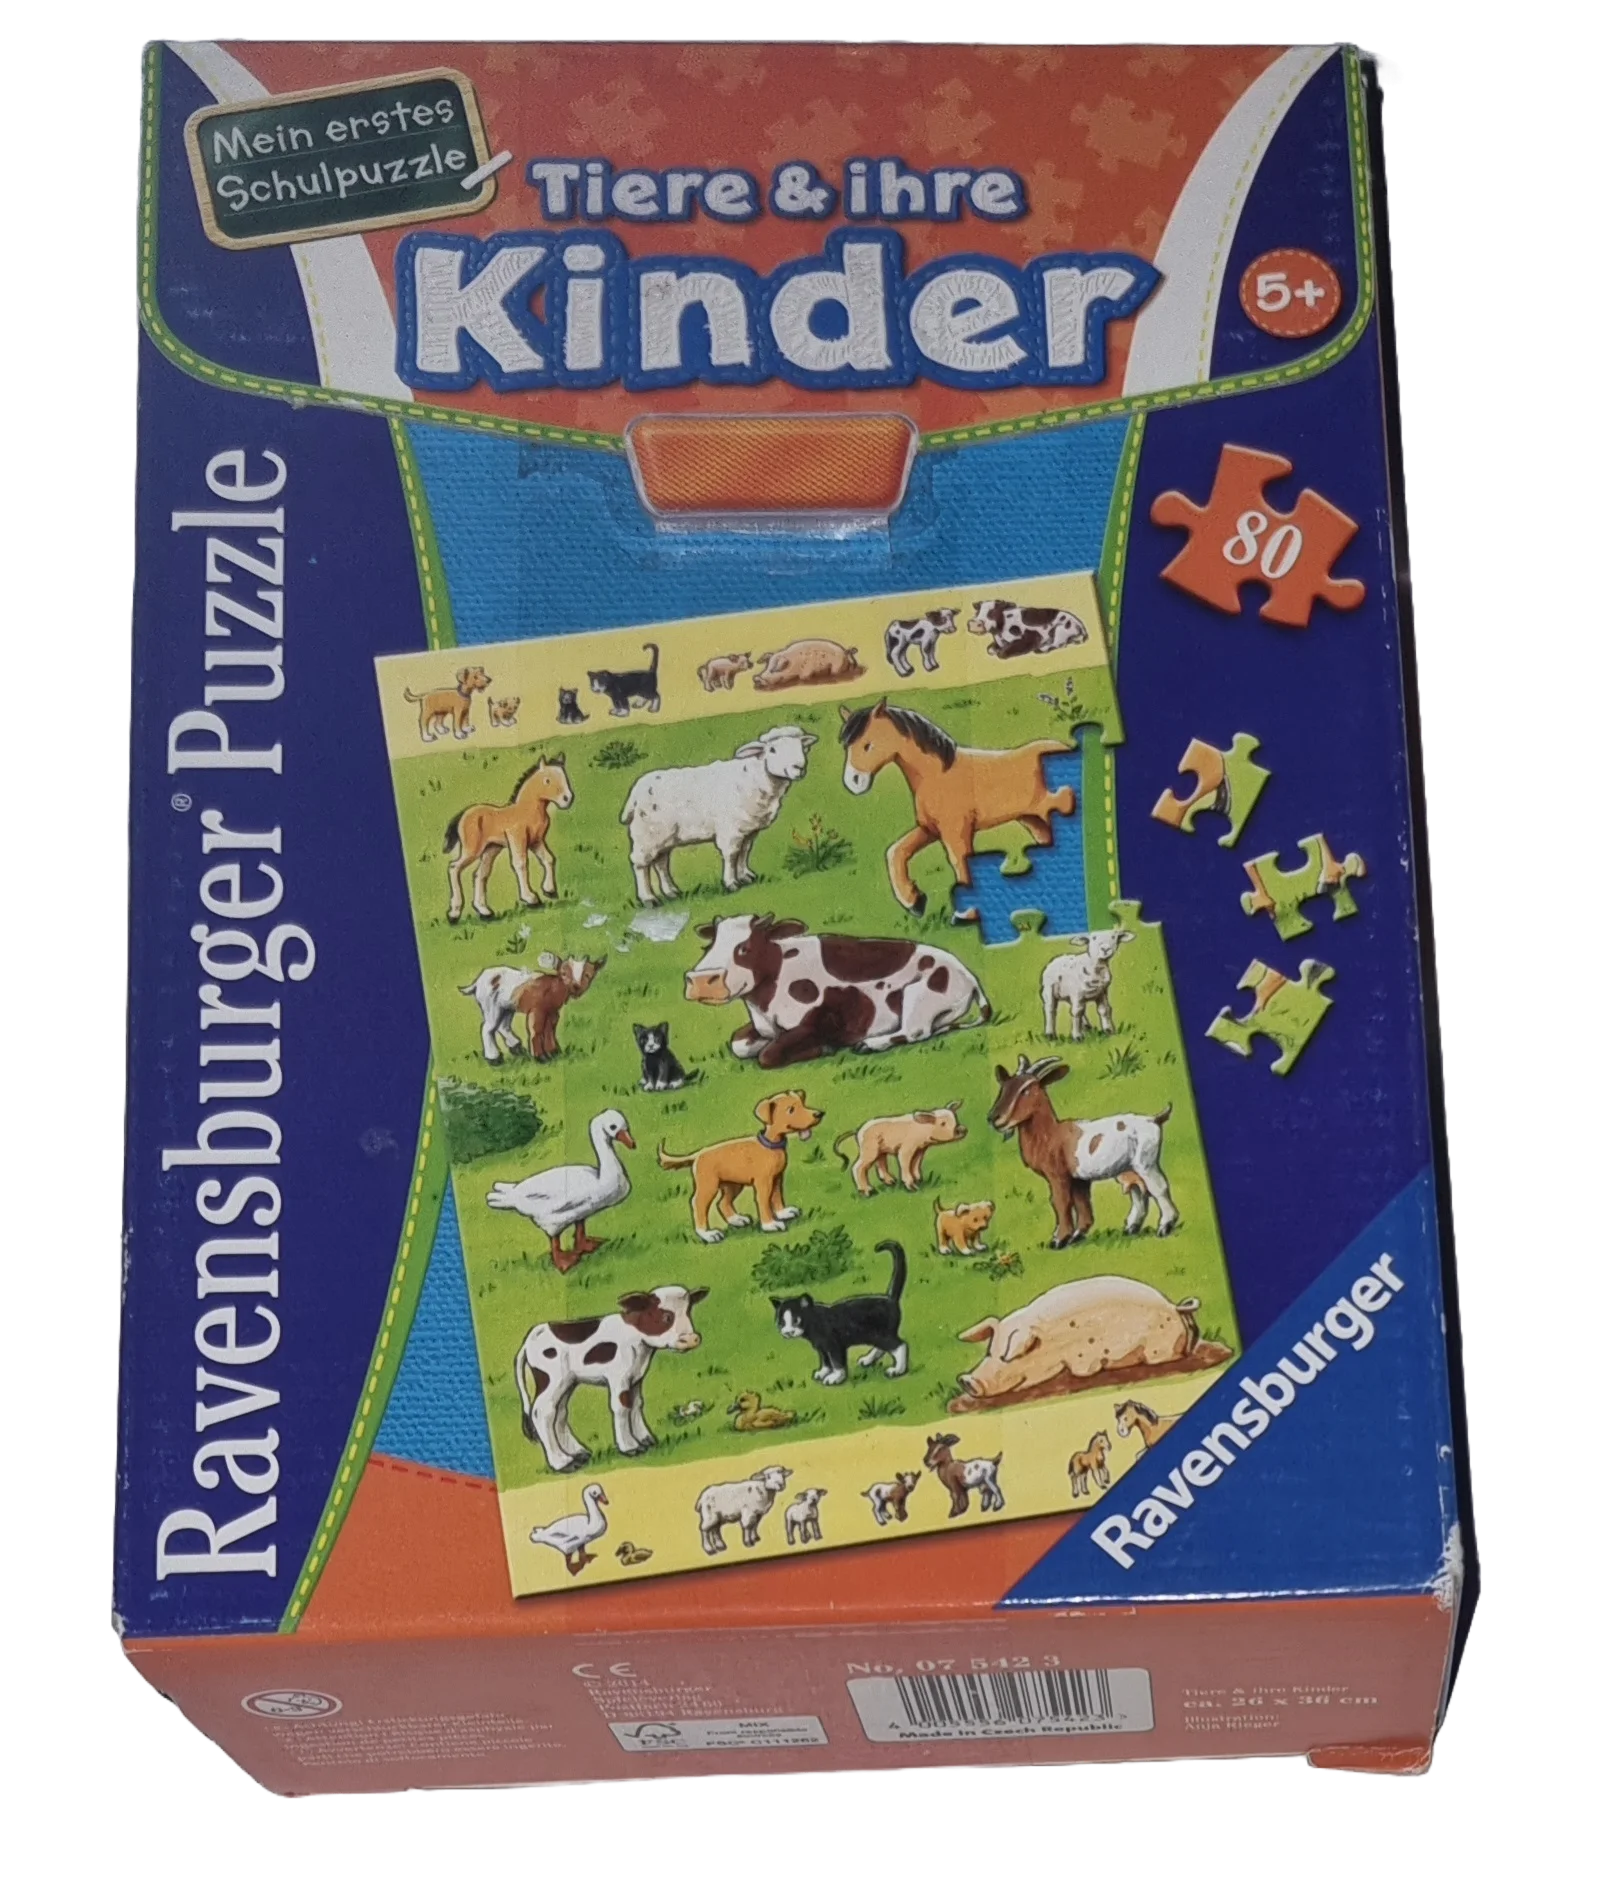 Ravensburger Schulpuzzle 80 Teile Tiere & ihre Kinder 075412